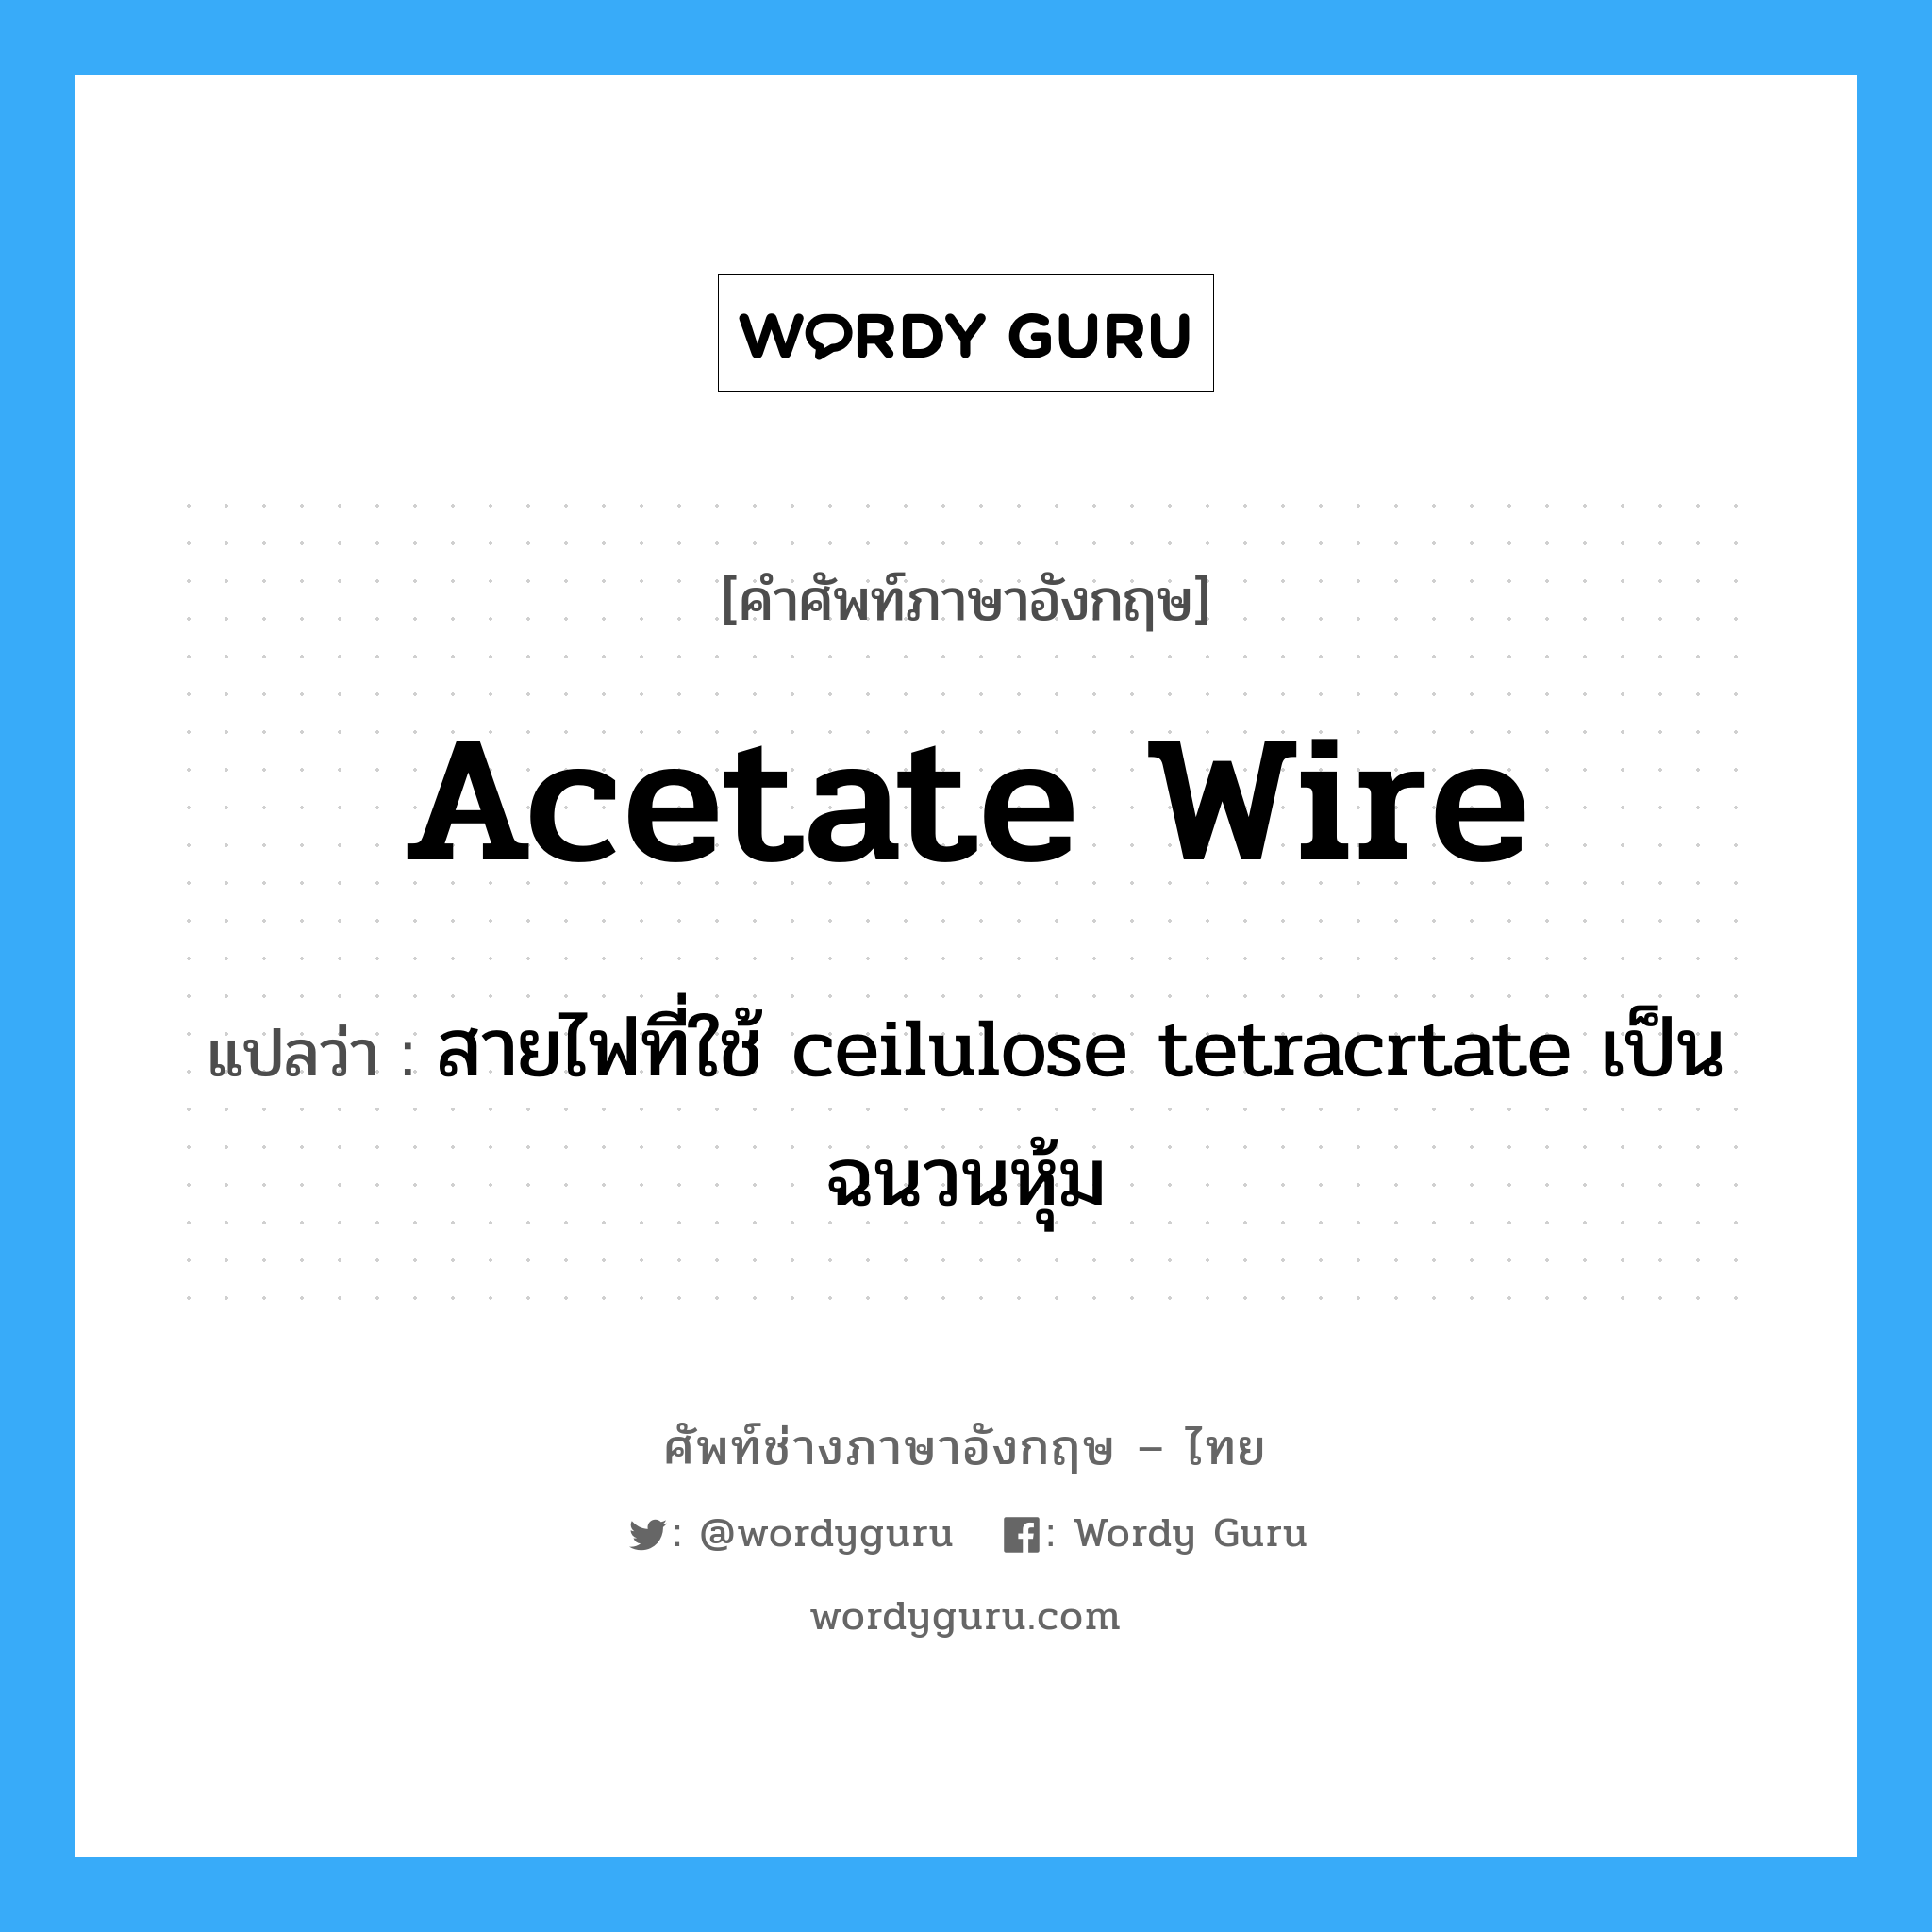 สายไฟที่ใช้ ceilulose tetracrtate เป็นฉนวนหุ้ม ภาษาอังกฤษ?, คำศัพท์ช่างภาษาอังกฤษ - ไทย สายไฟที่ใช้ ceilulose tetracrtate เป็นฉนวนหุ้ม คำศัพท์ภาษาอังกฤษ สายไฟที่ใช้ ceilulose tetracrtate เป็นฉนวนหุ้ม แปลว่า acetate wire